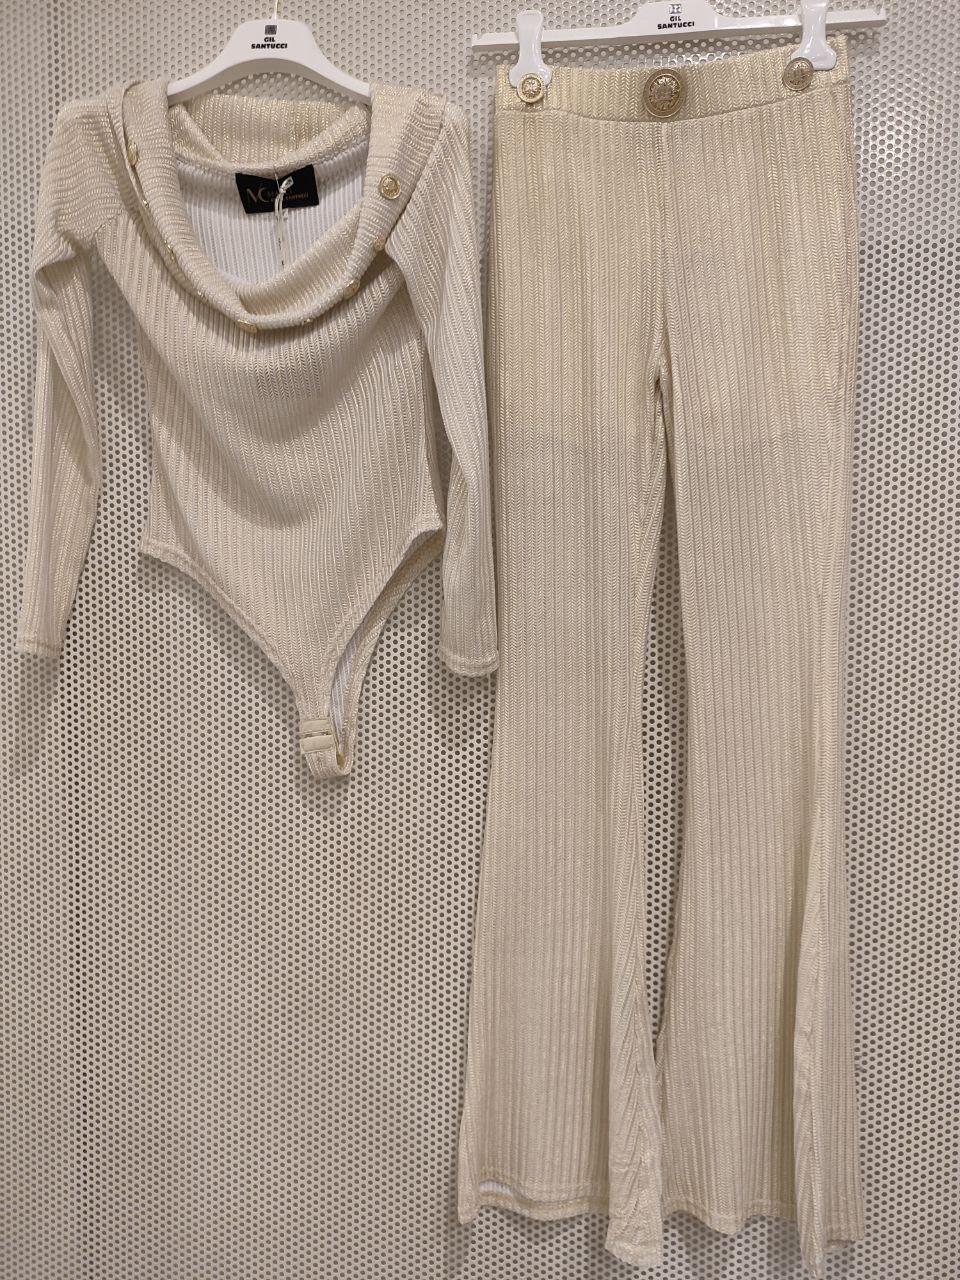 Итальянская одежда, бренд Gil Santucci, арт. 73112372